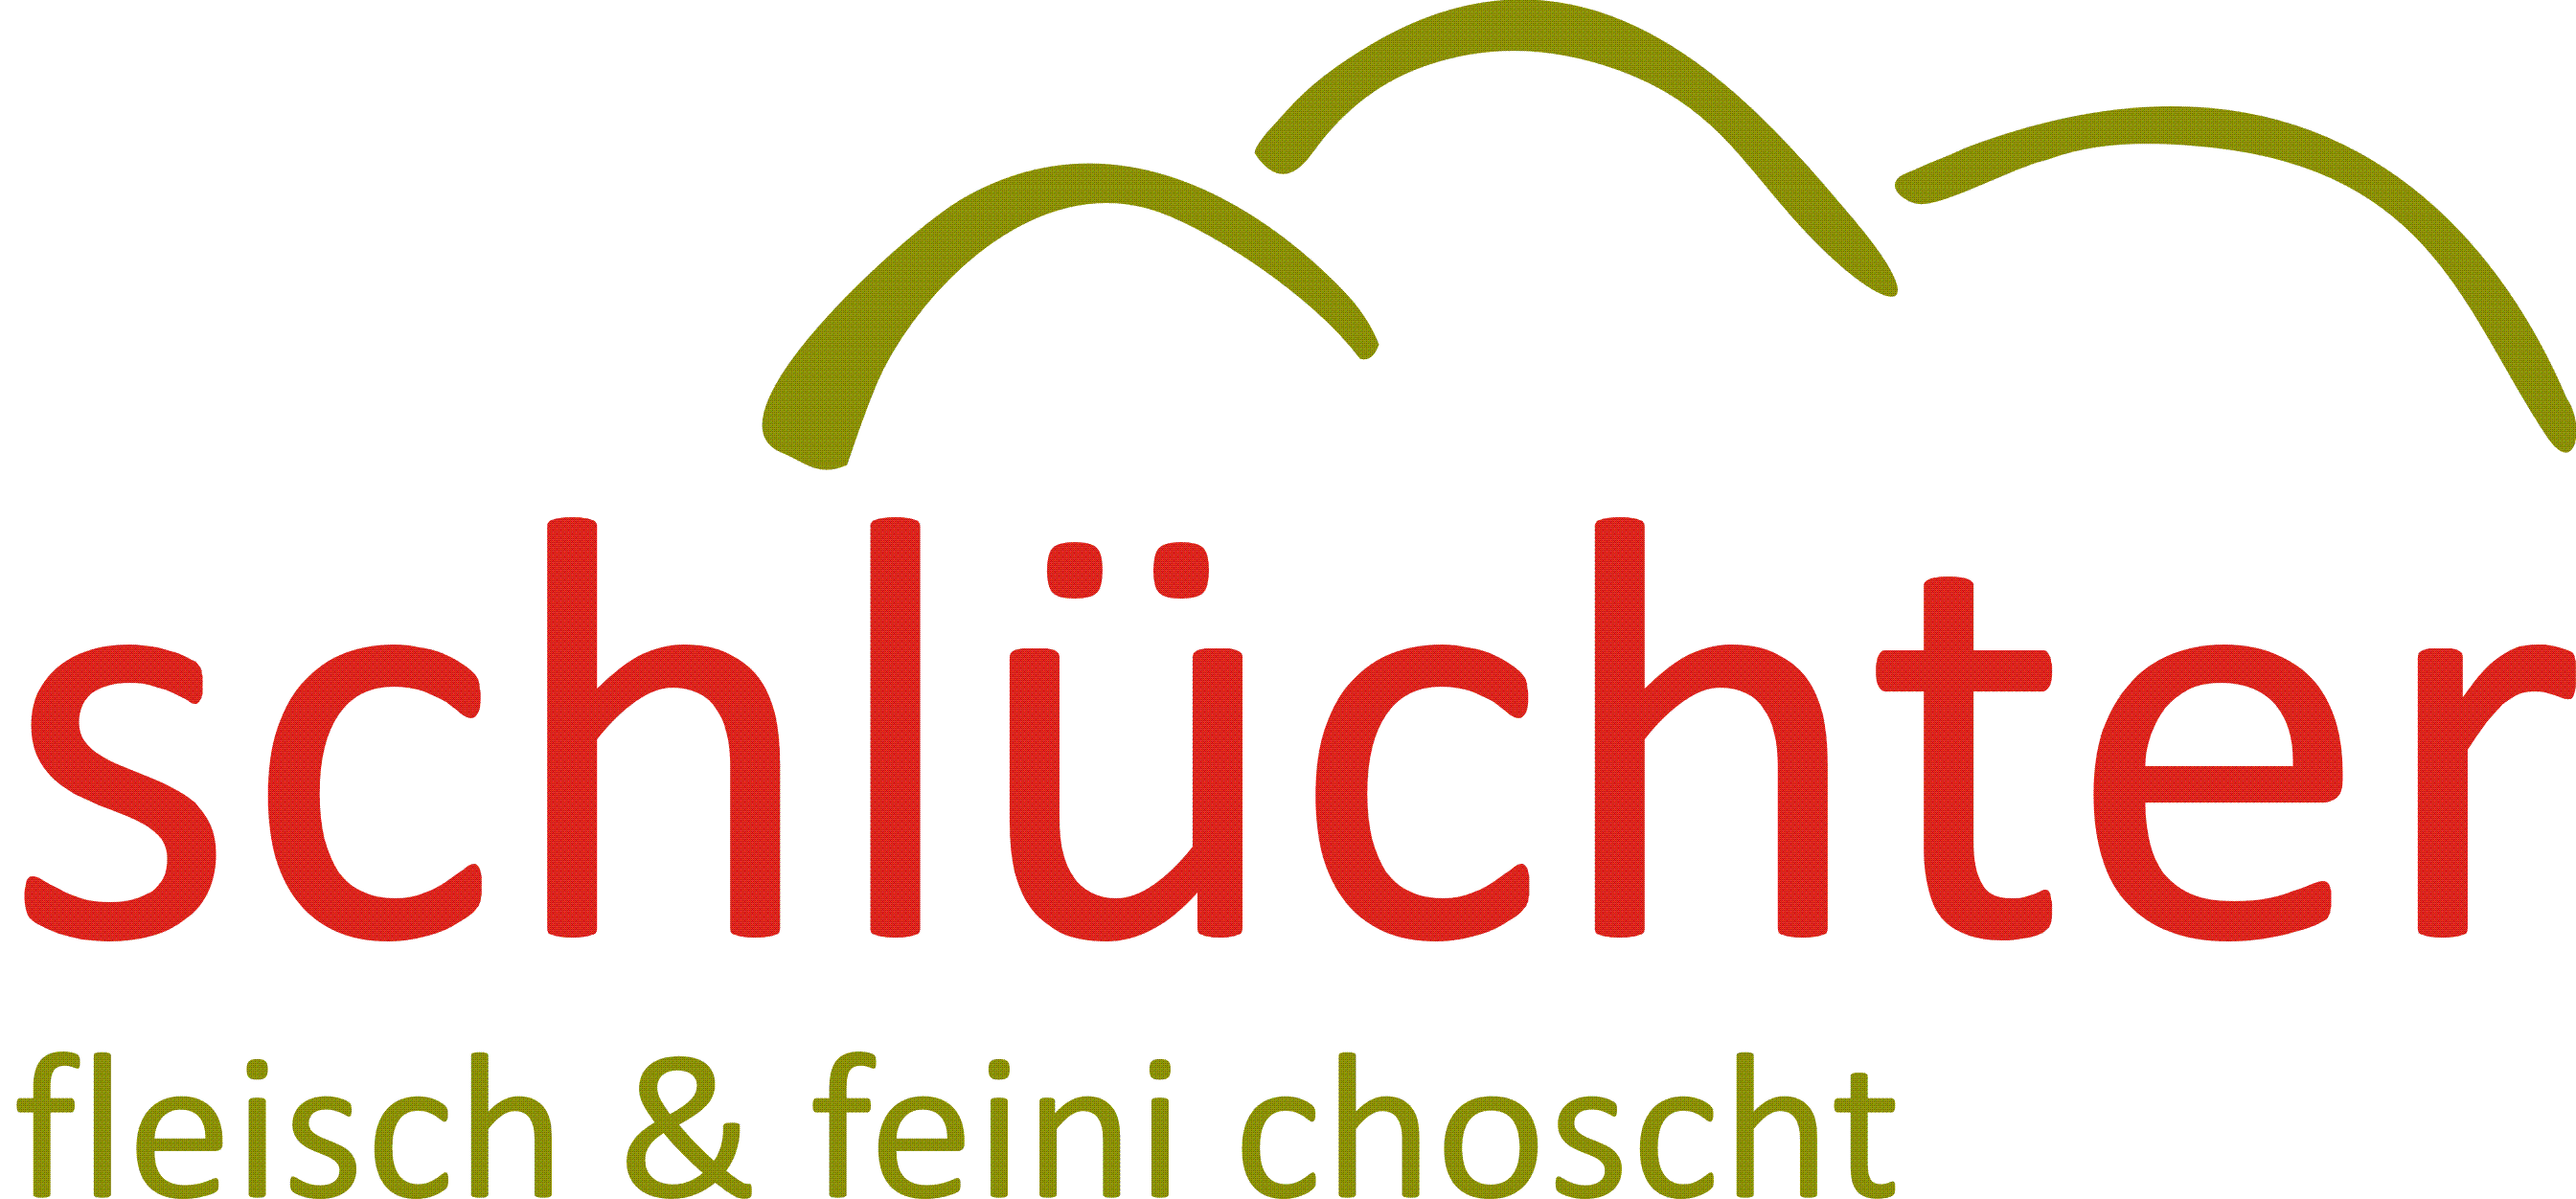 Feini Choscht logo